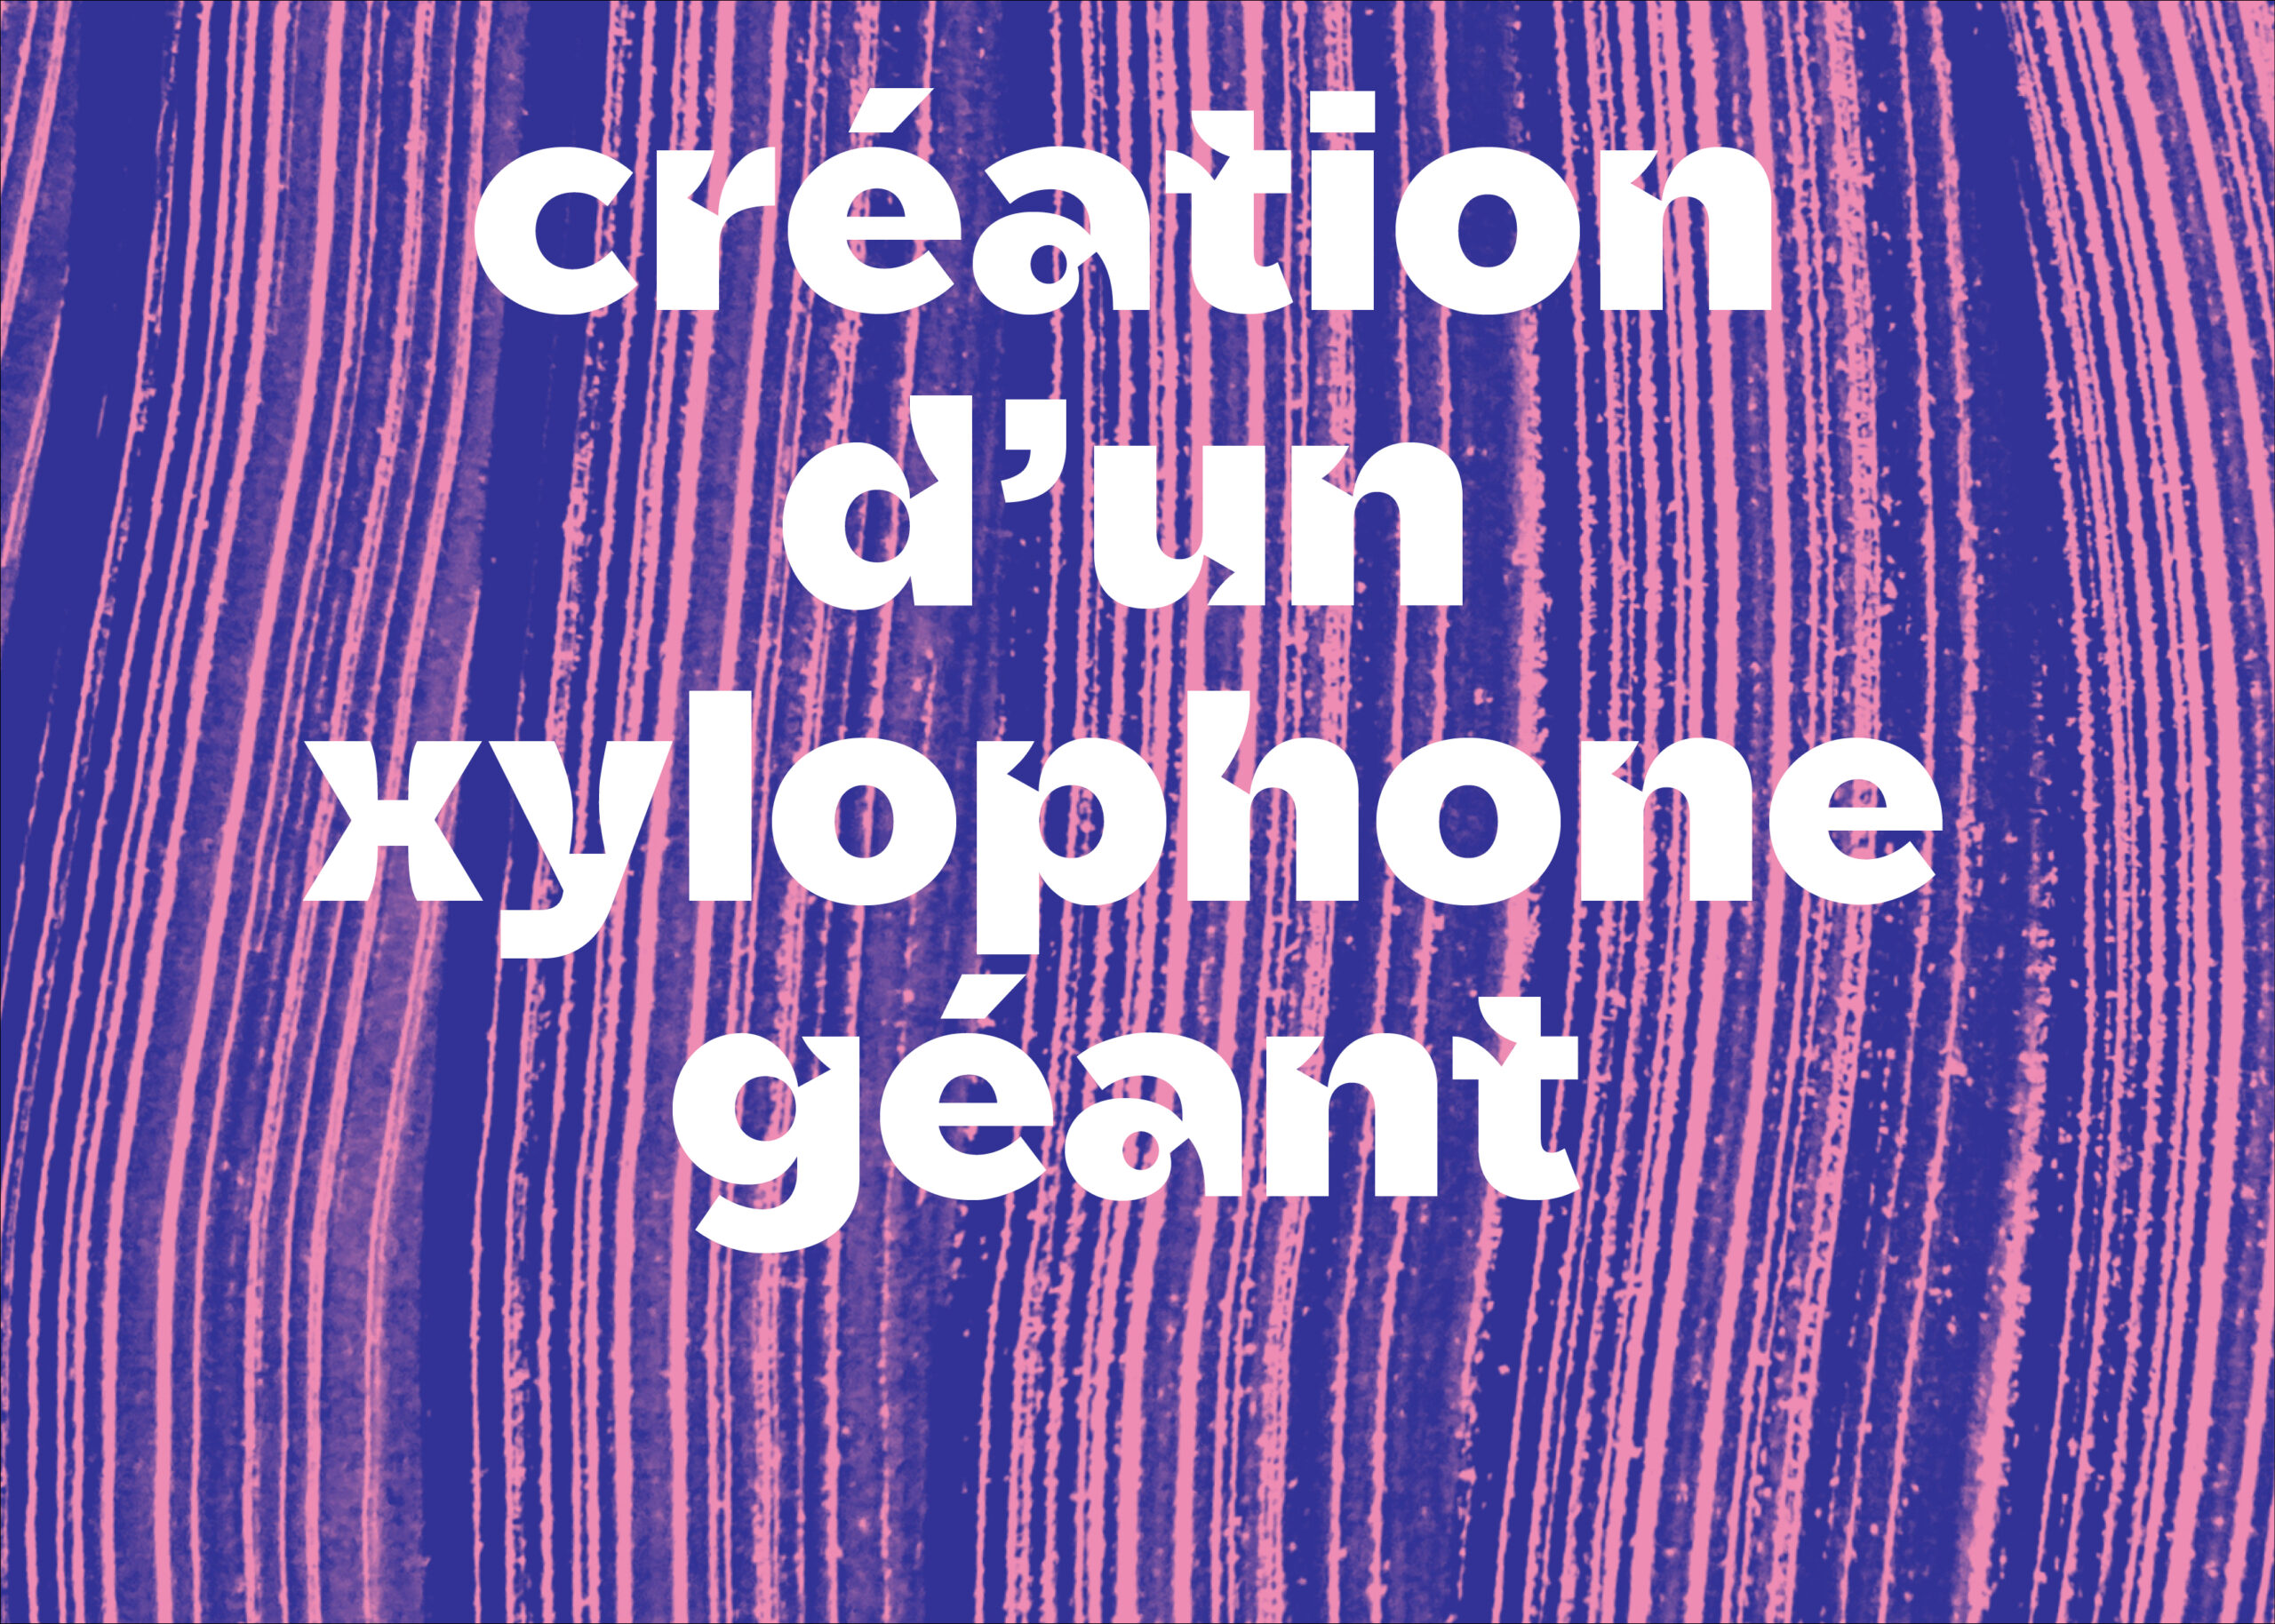 [C’EST REPARTI POUR UN TOUR] Atelier de création d’un xylophone géant